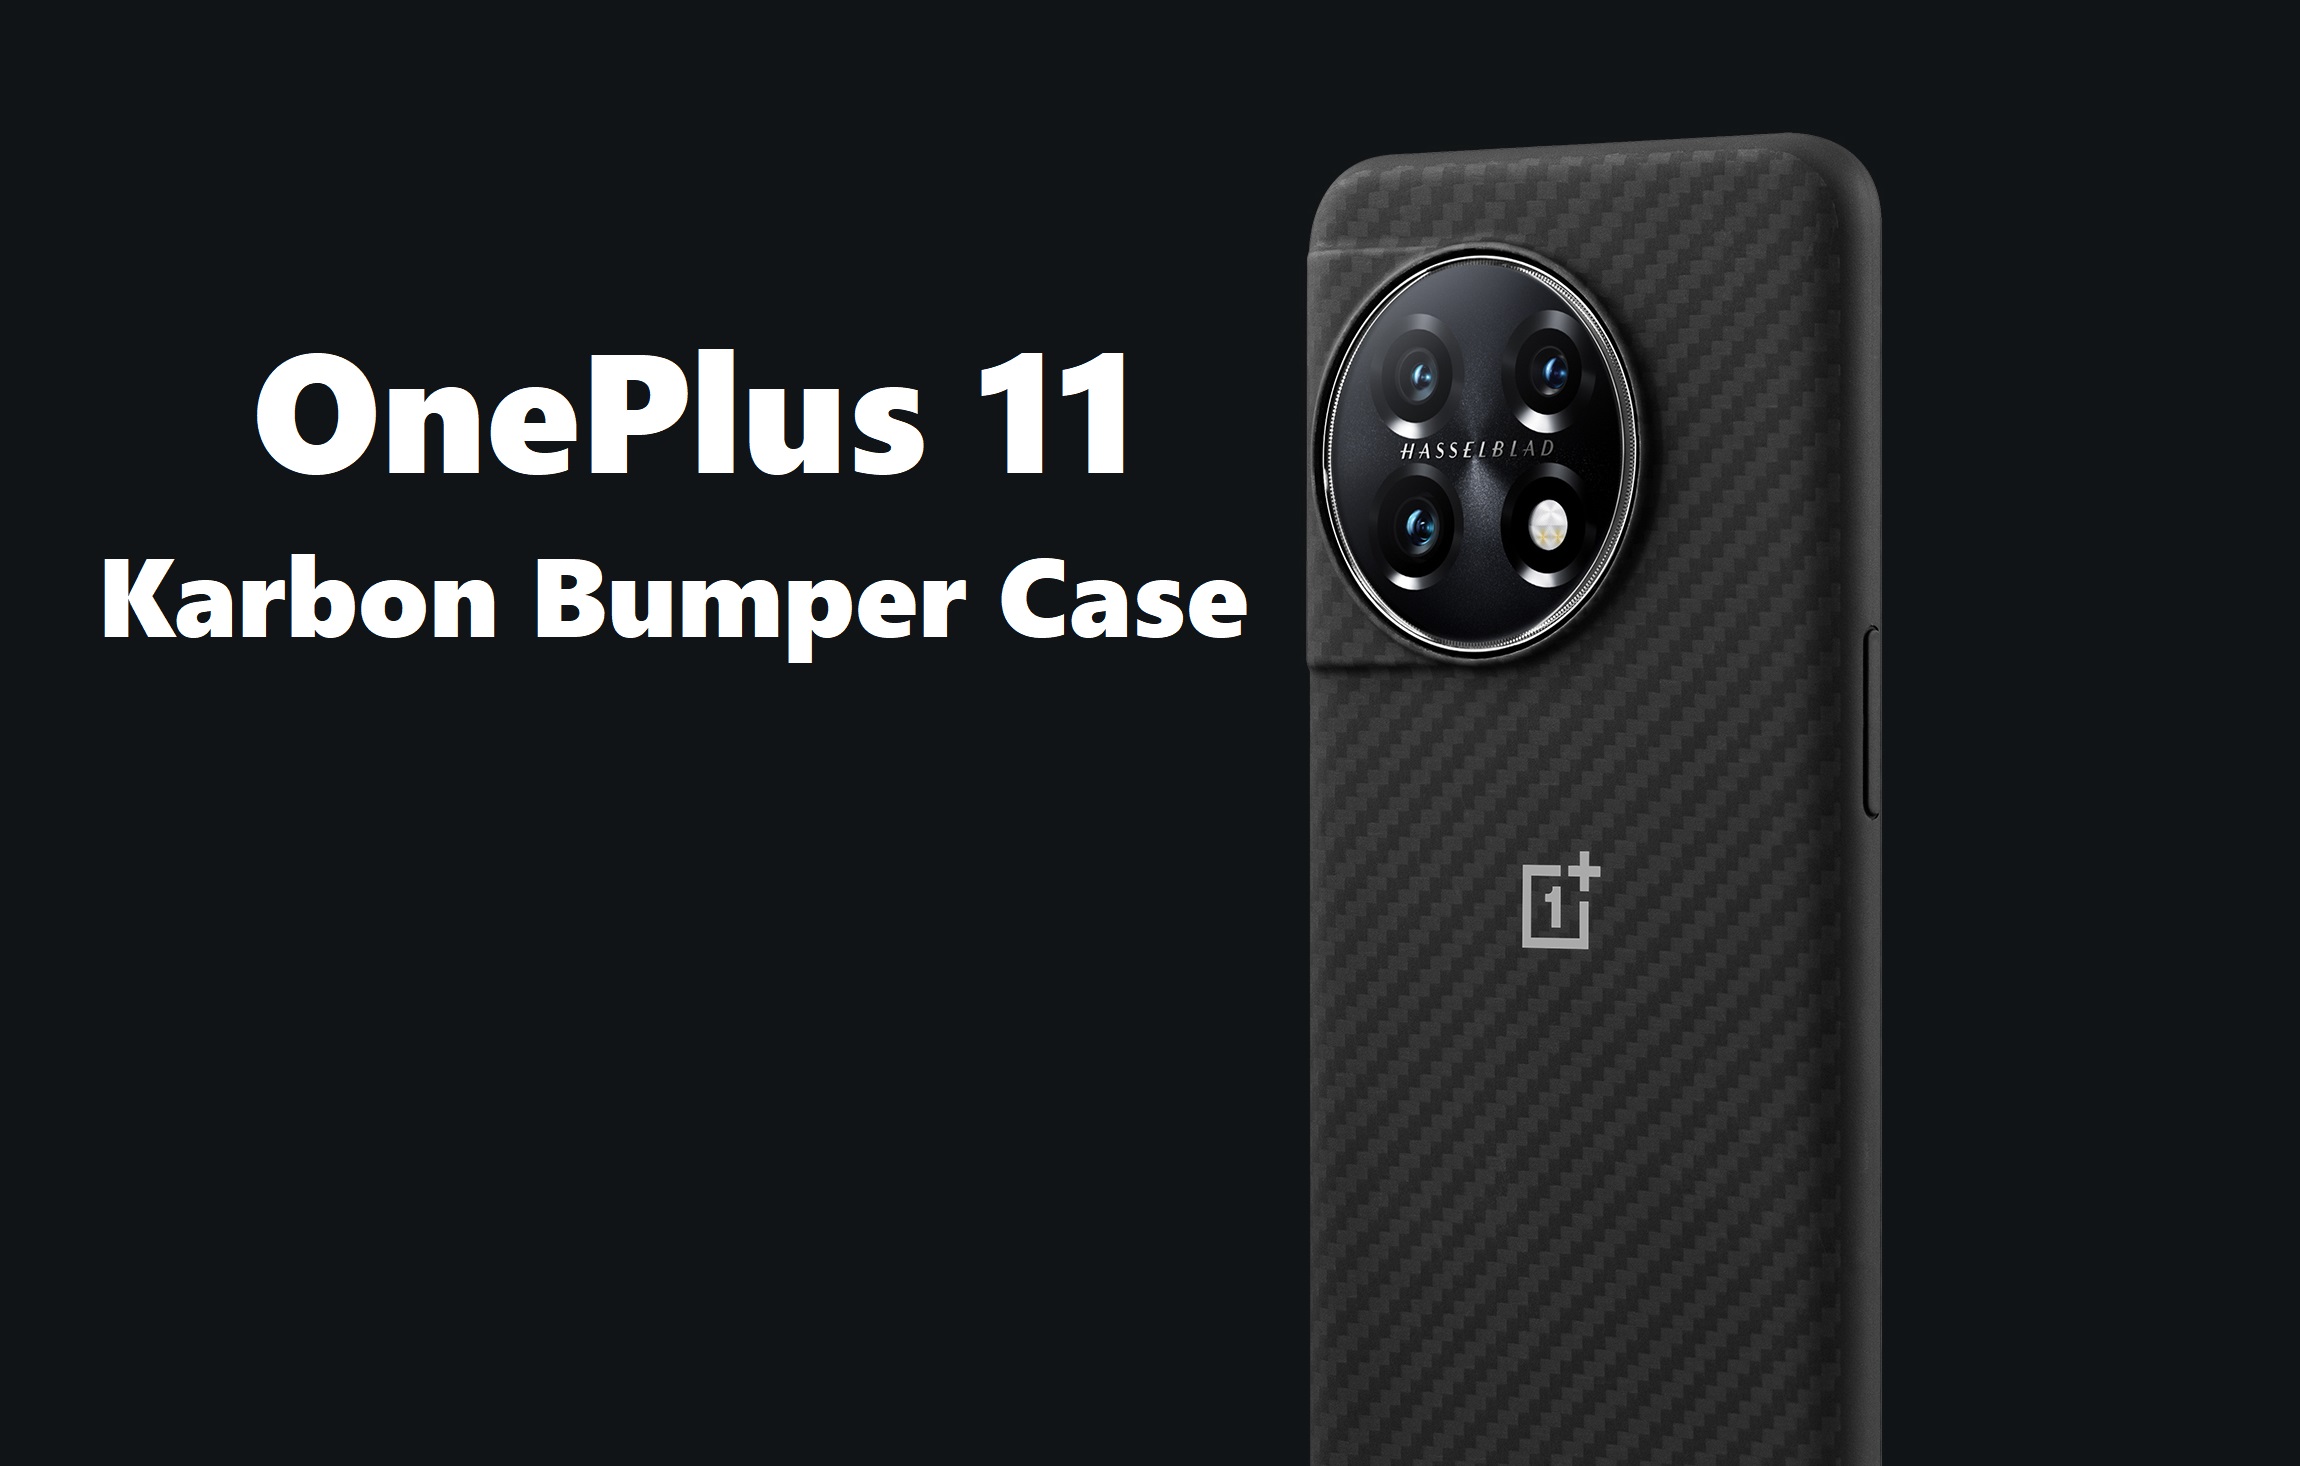 OnePlus 11 Karbon Bumper Case